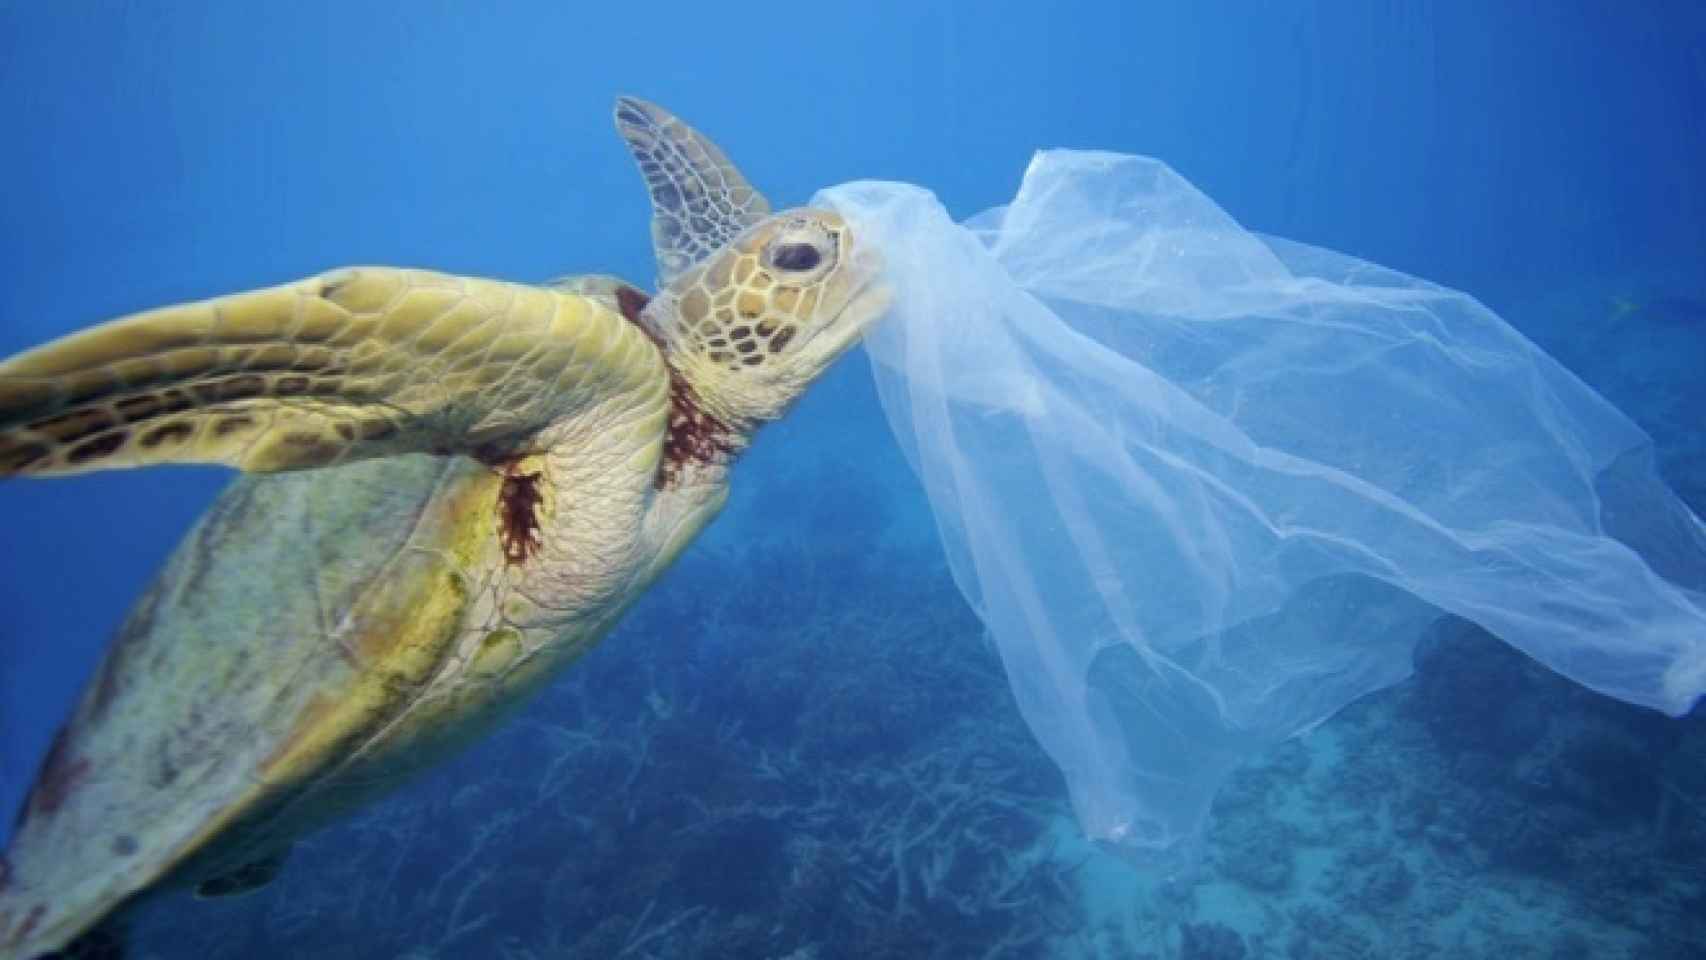 Una tortuga intenta comerse una bolsa de plástico al confundirla con comida.